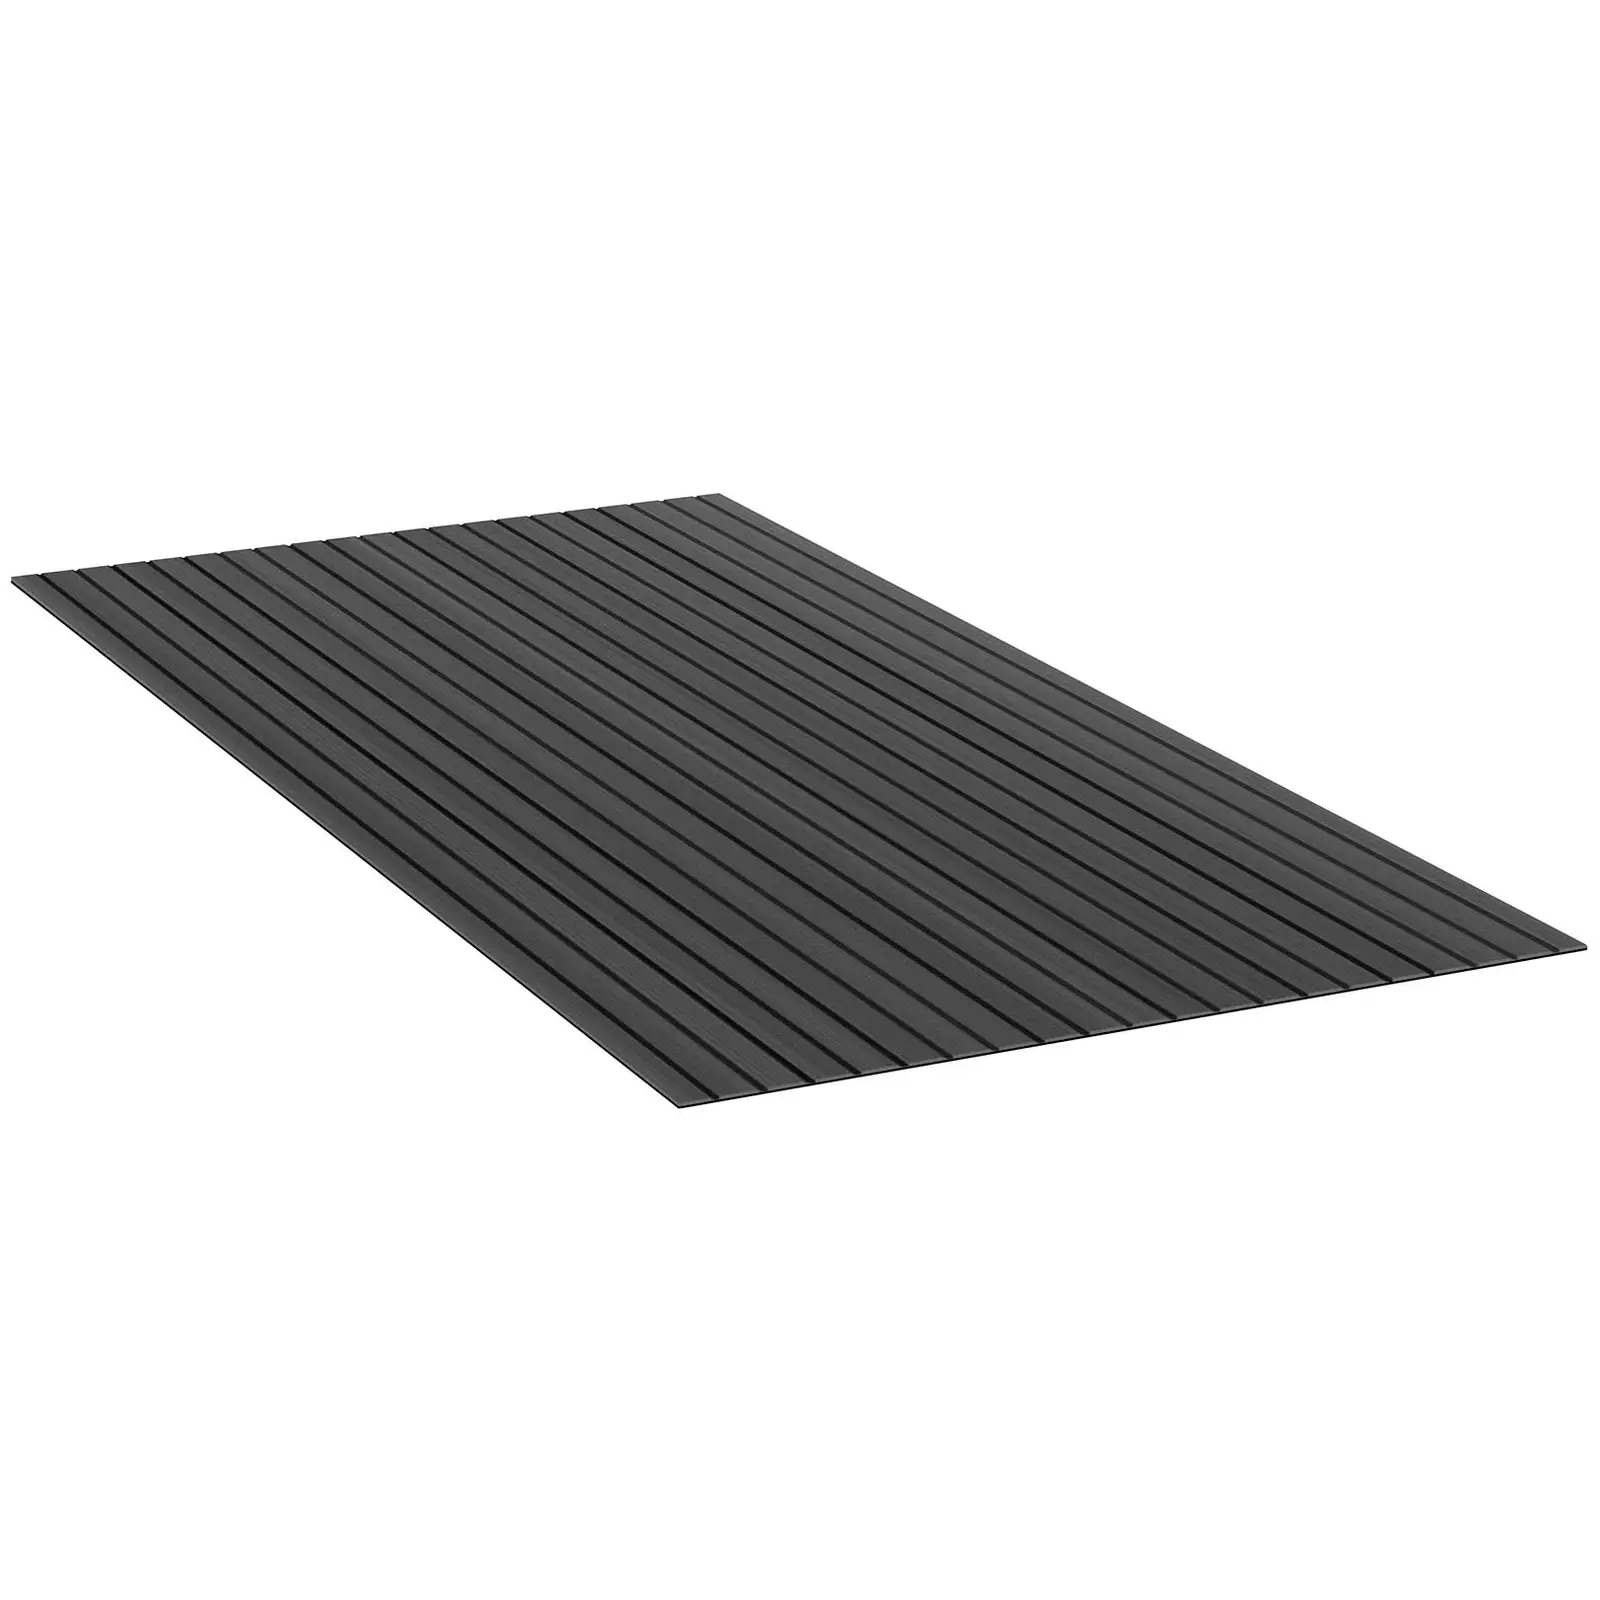 Boat Flooring - 240 x 120 cm - anthracite/black